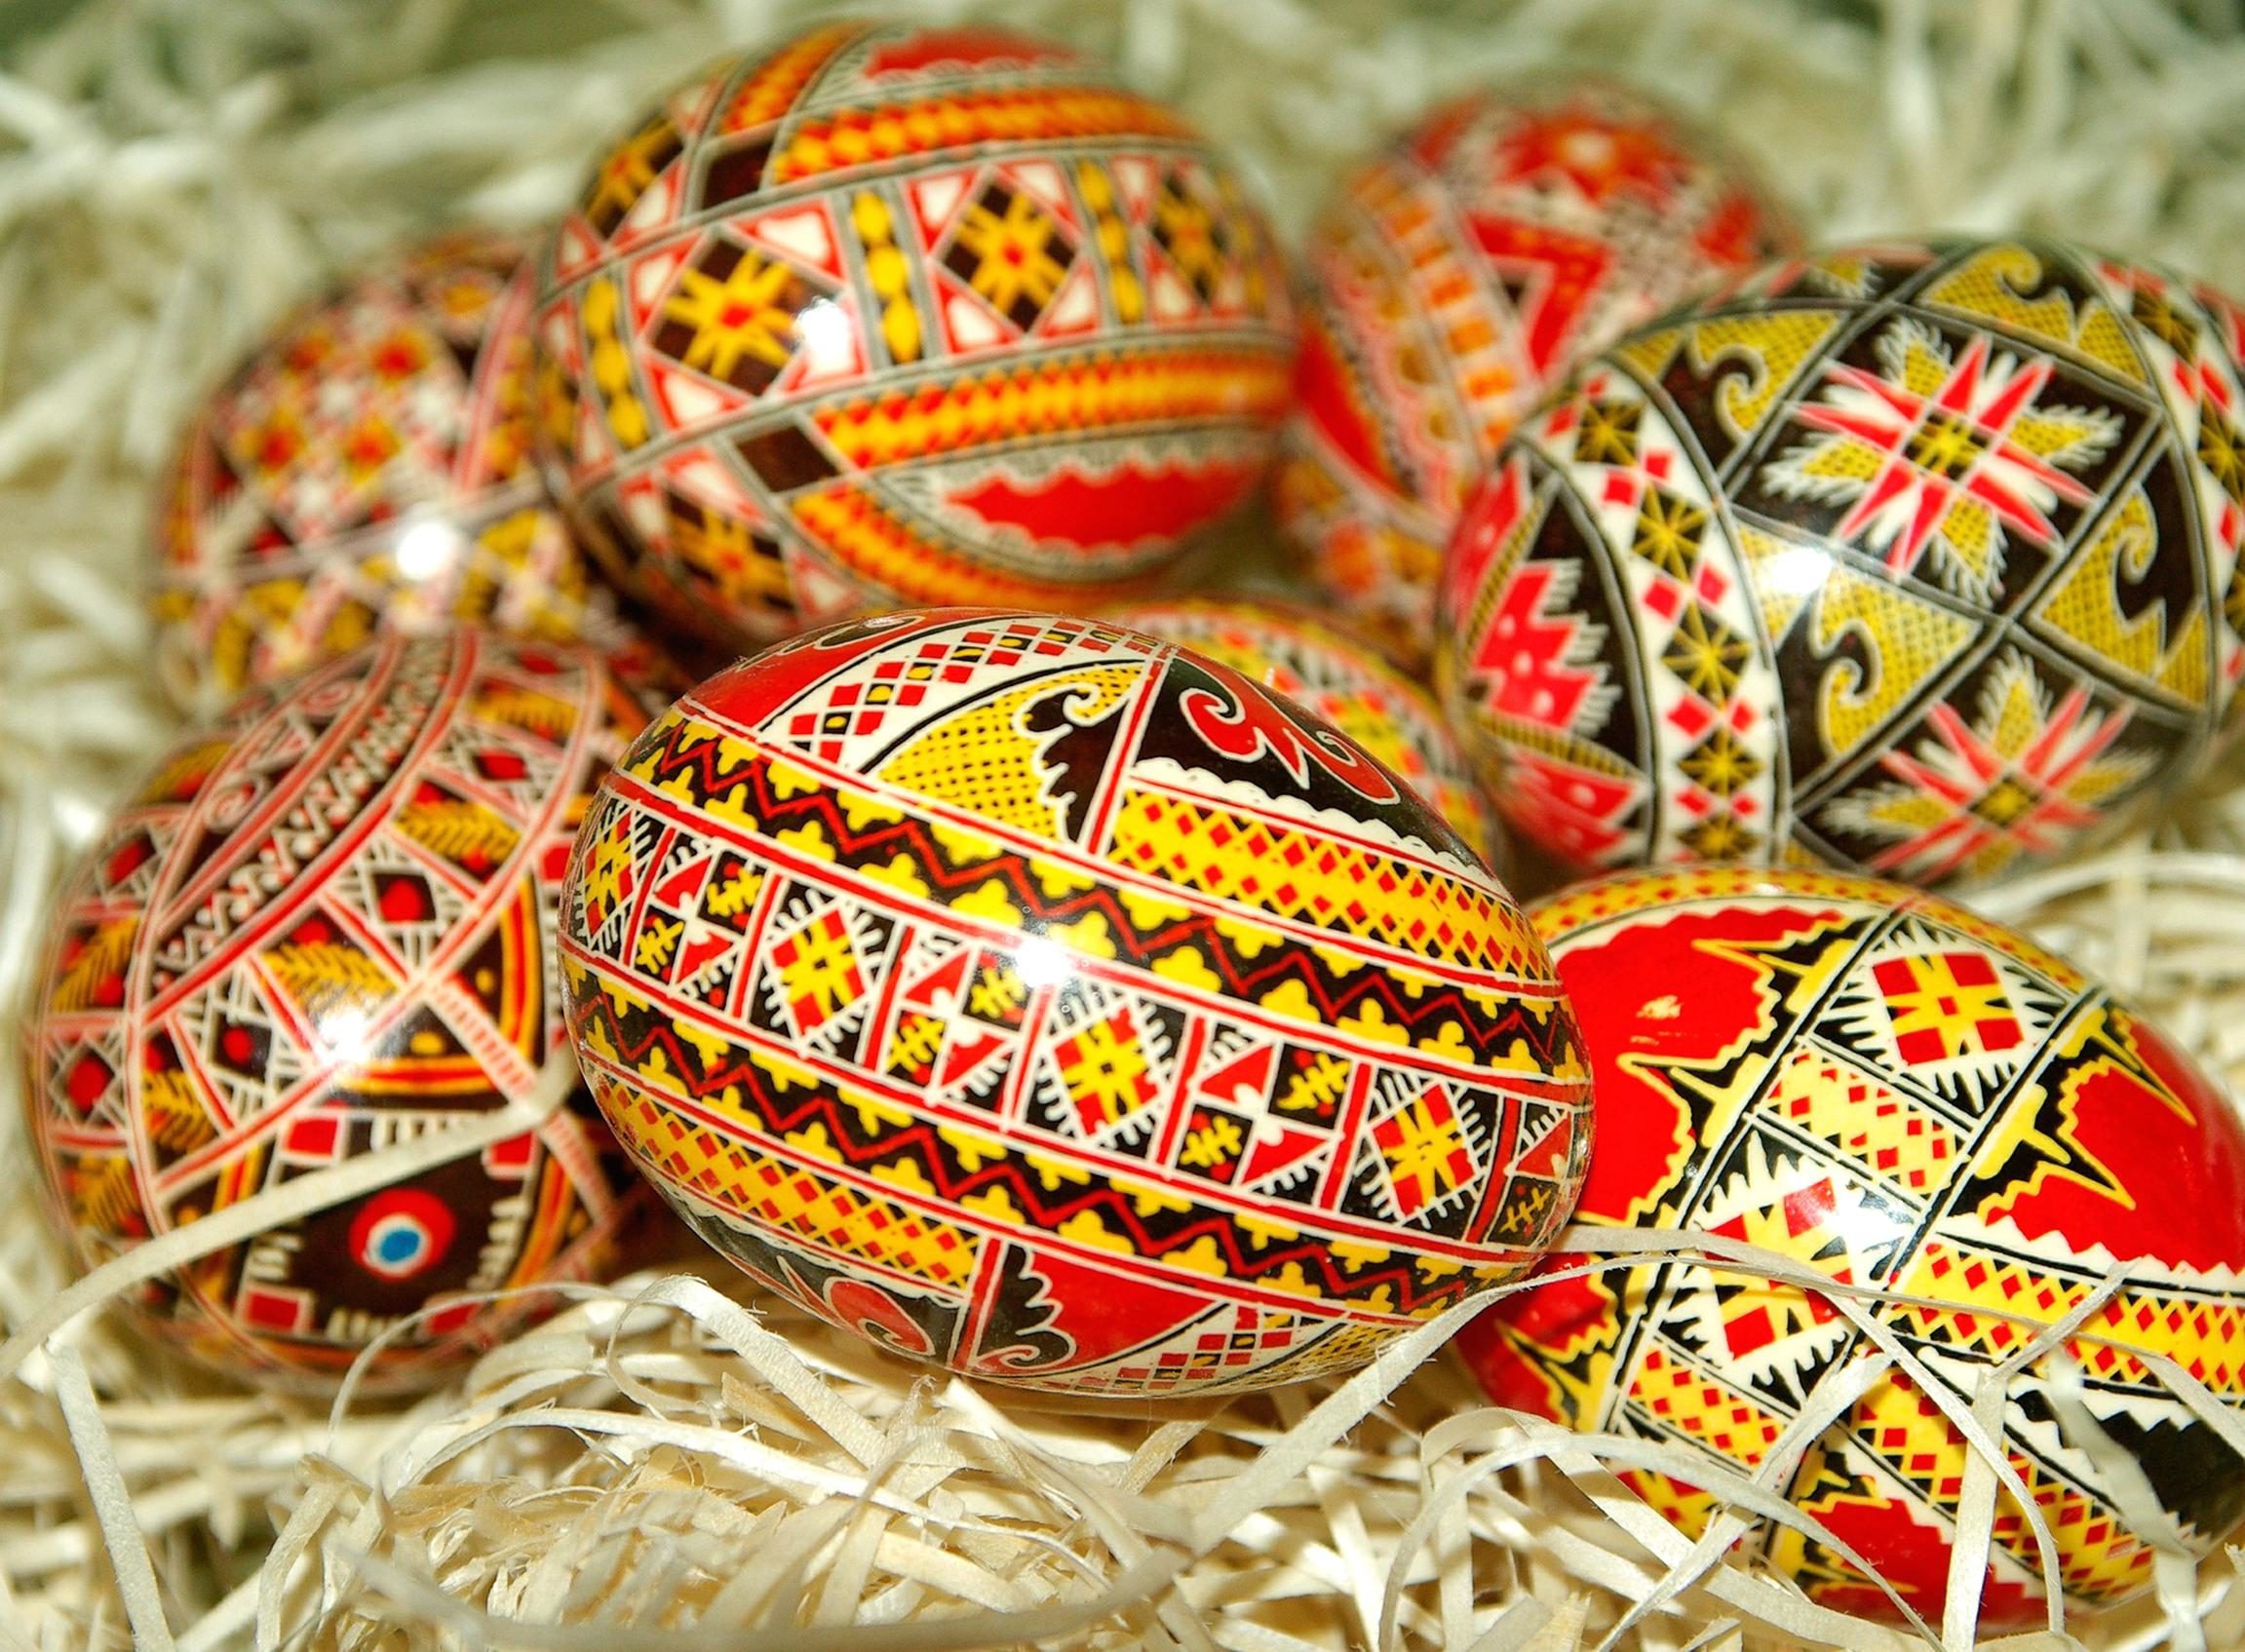 Ilmainen kuva: Pääsiäinen, sisustus, muna, celebration, käsintehty, uskonto